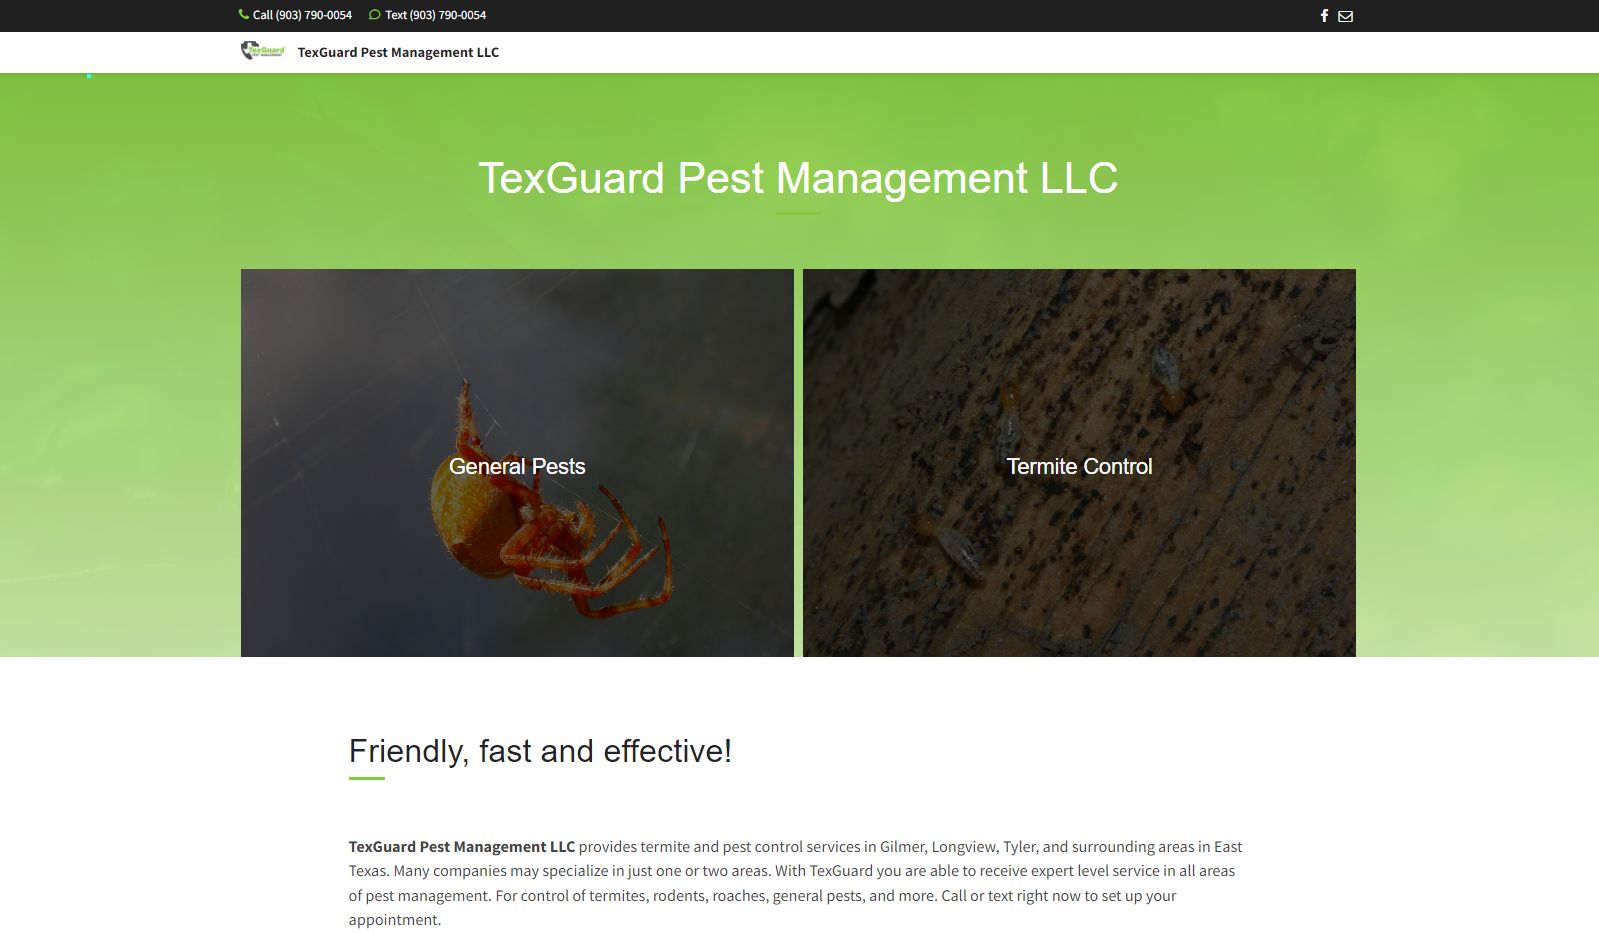 TexGuard Pest Management landing page